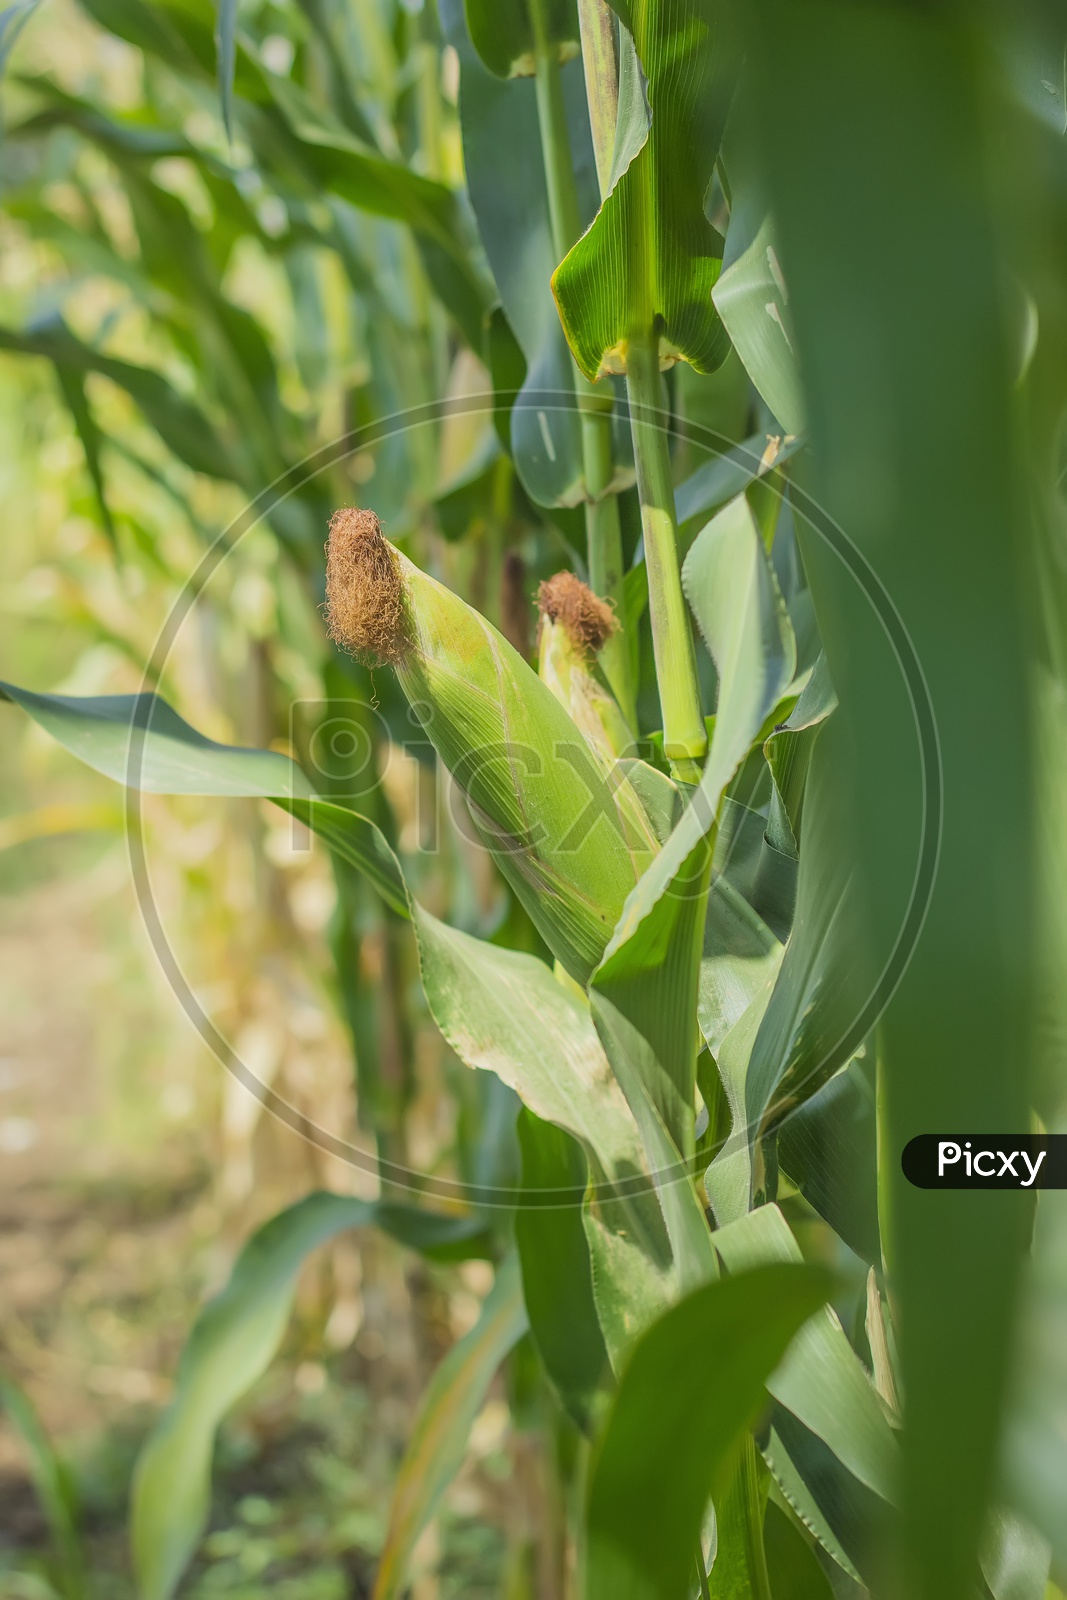 Corn Cob Growing in a Field Closeup Shot